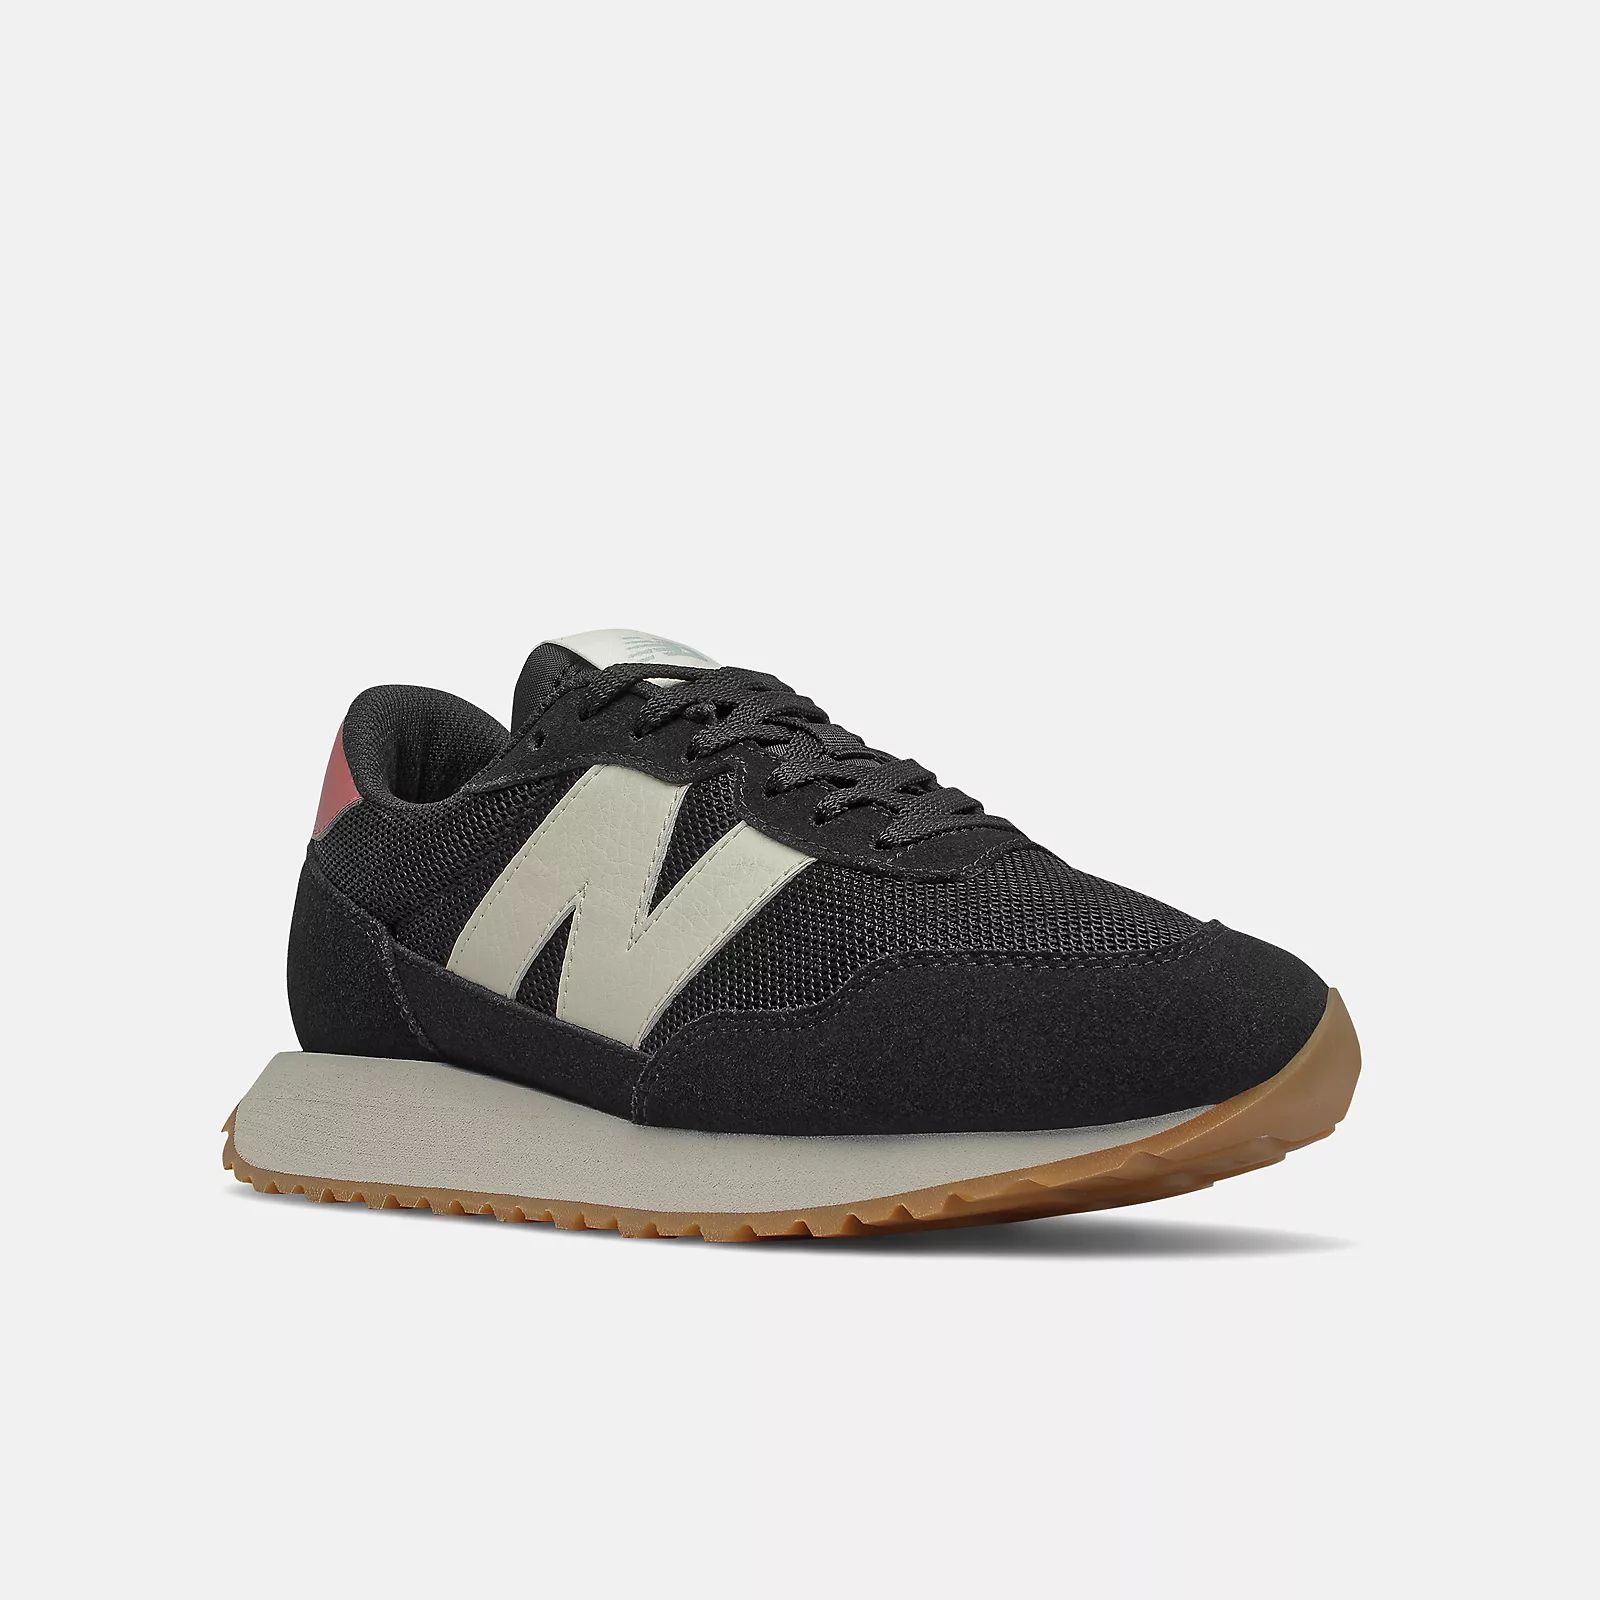 237 | New Balance Athletic Shoe